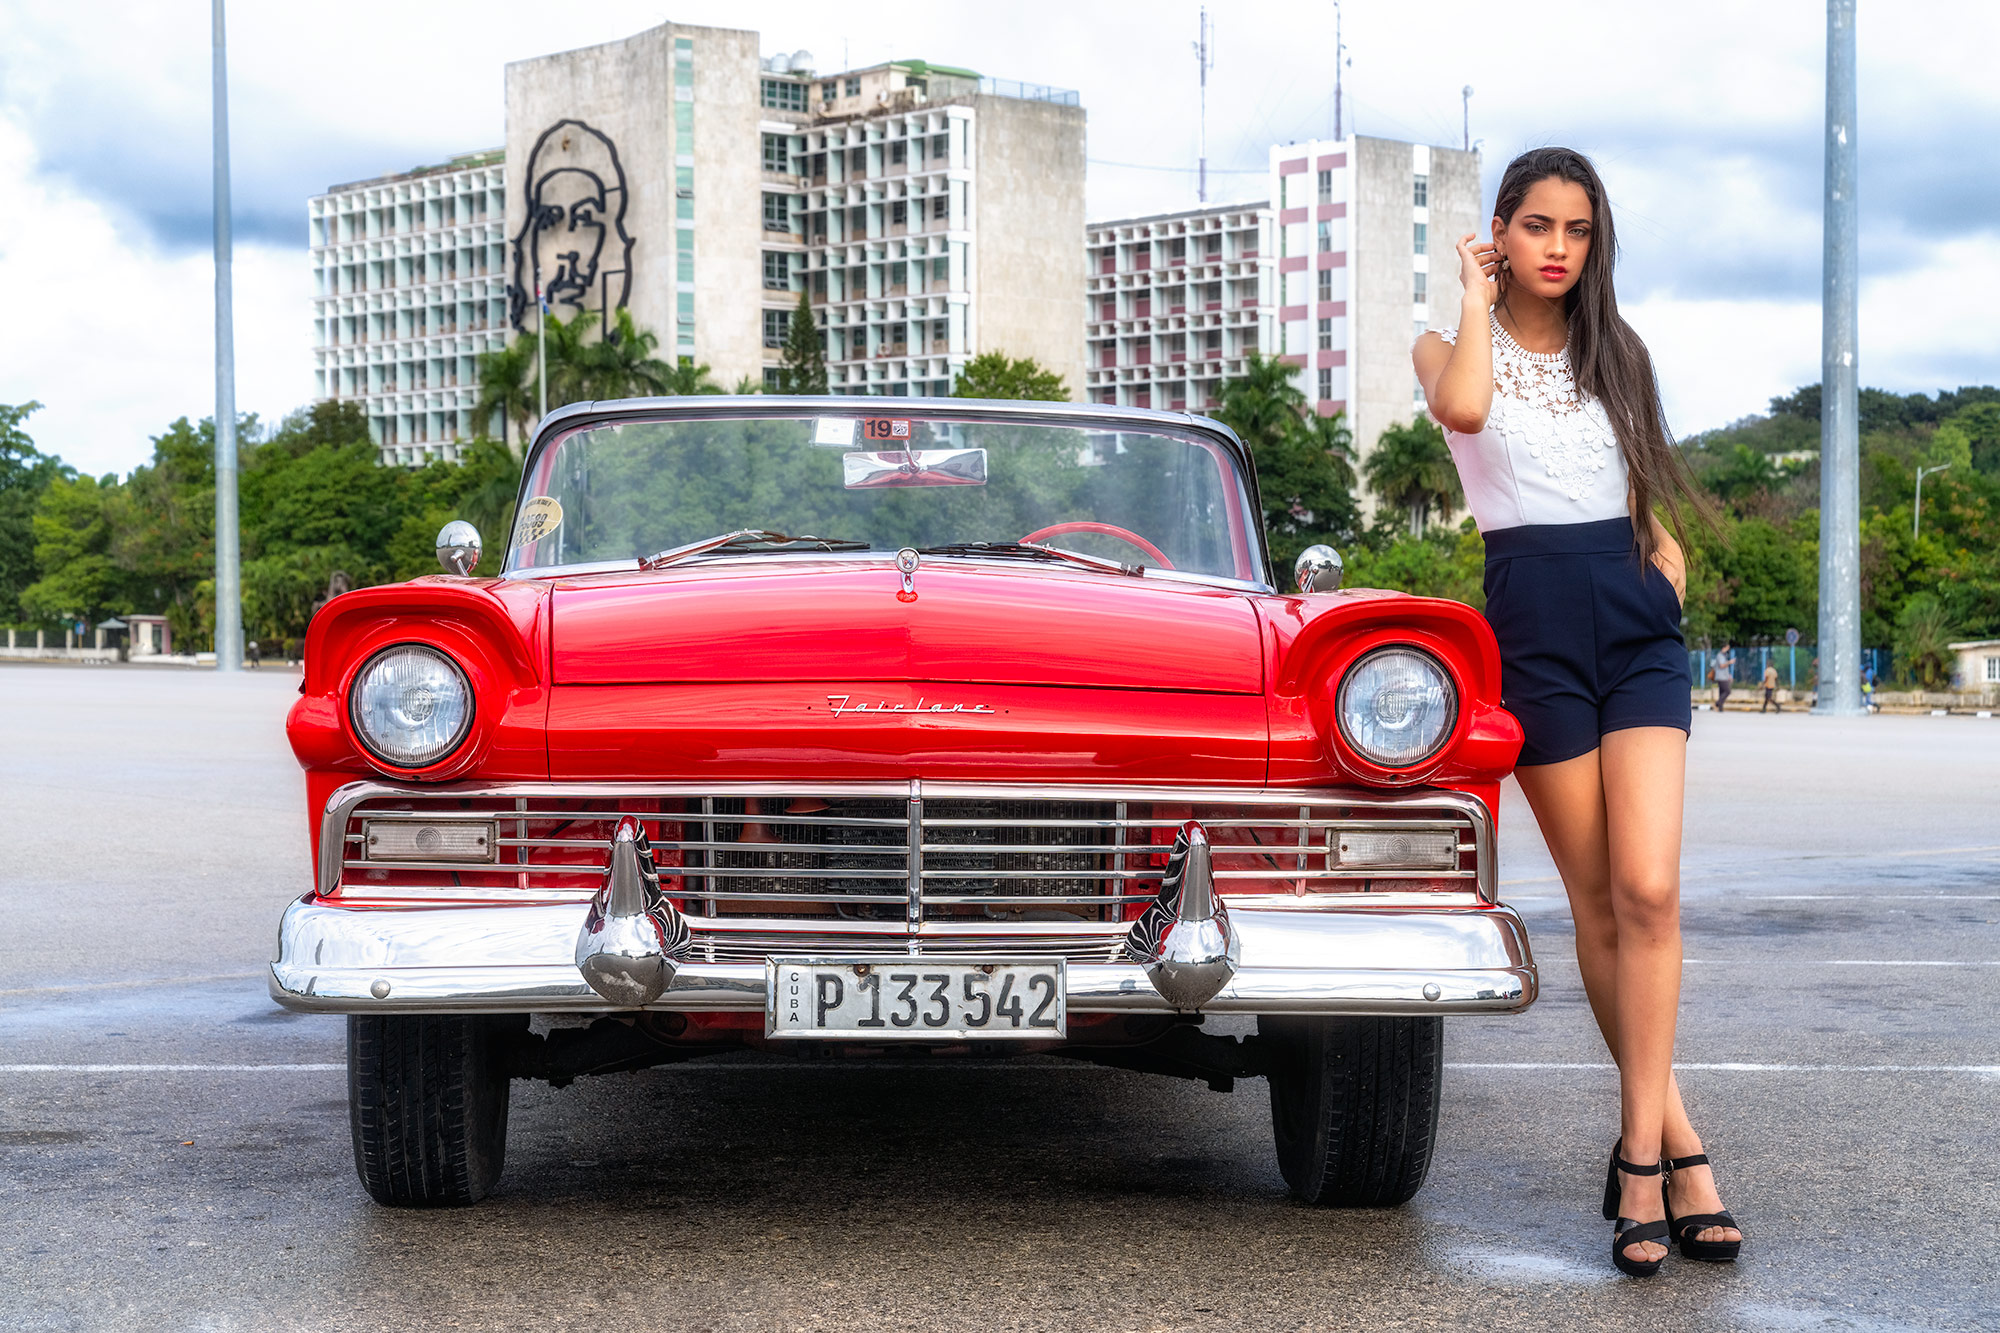 Fotomodell und Oldtimer fotografiert auf dem Revolutionsplatz in Havanna auf einer Fotoreise mit Benny Rebel Fotosafaris GmbH. Che Guevara.